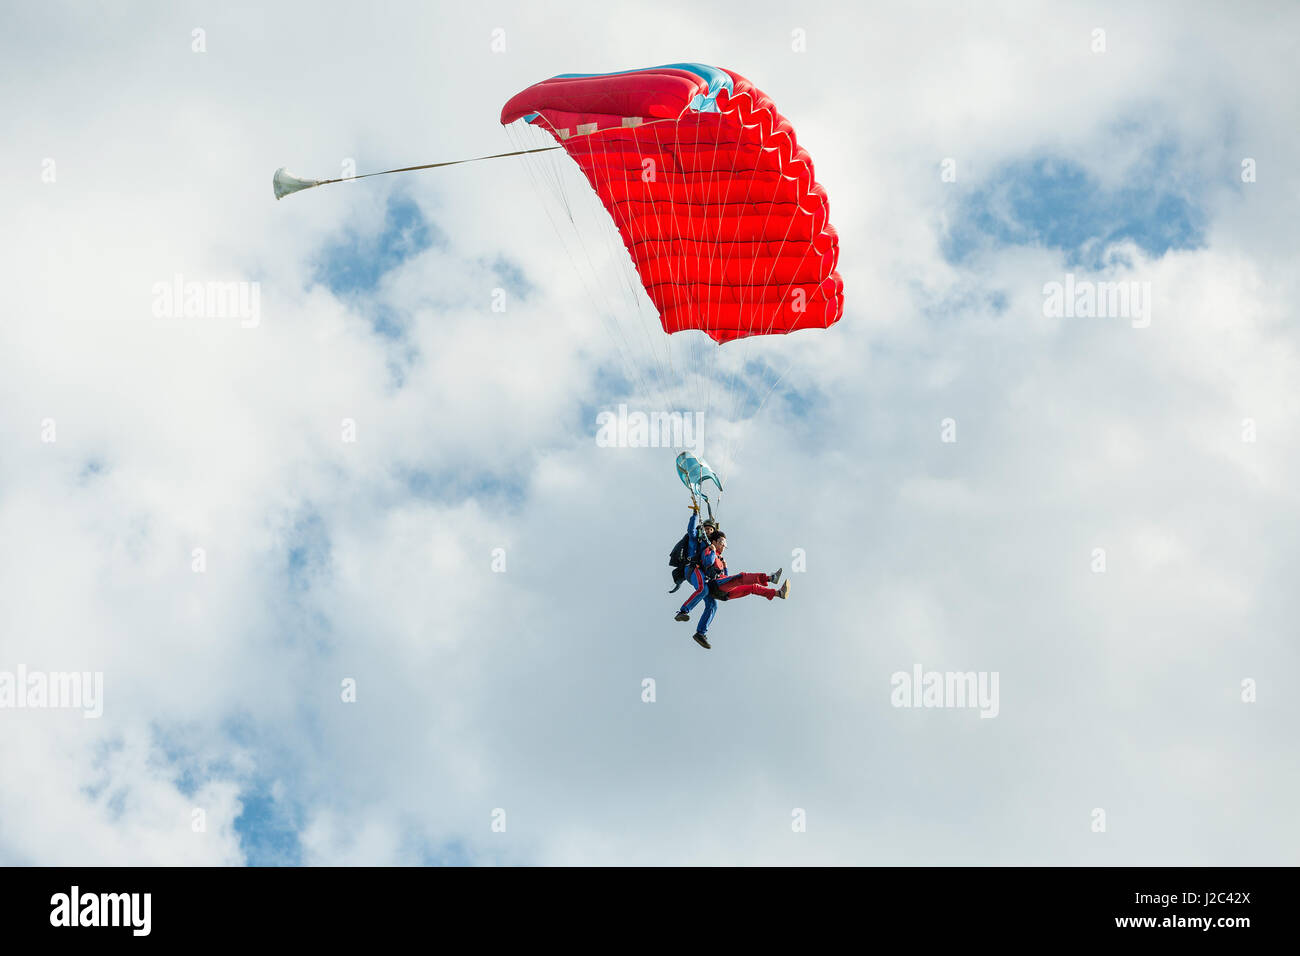 Pribram, cze - août 19, 2016. tandem parapente rouge voler contre le ciel nuageux dans l'aéroport de pribram, République tchèque Banque D'Images